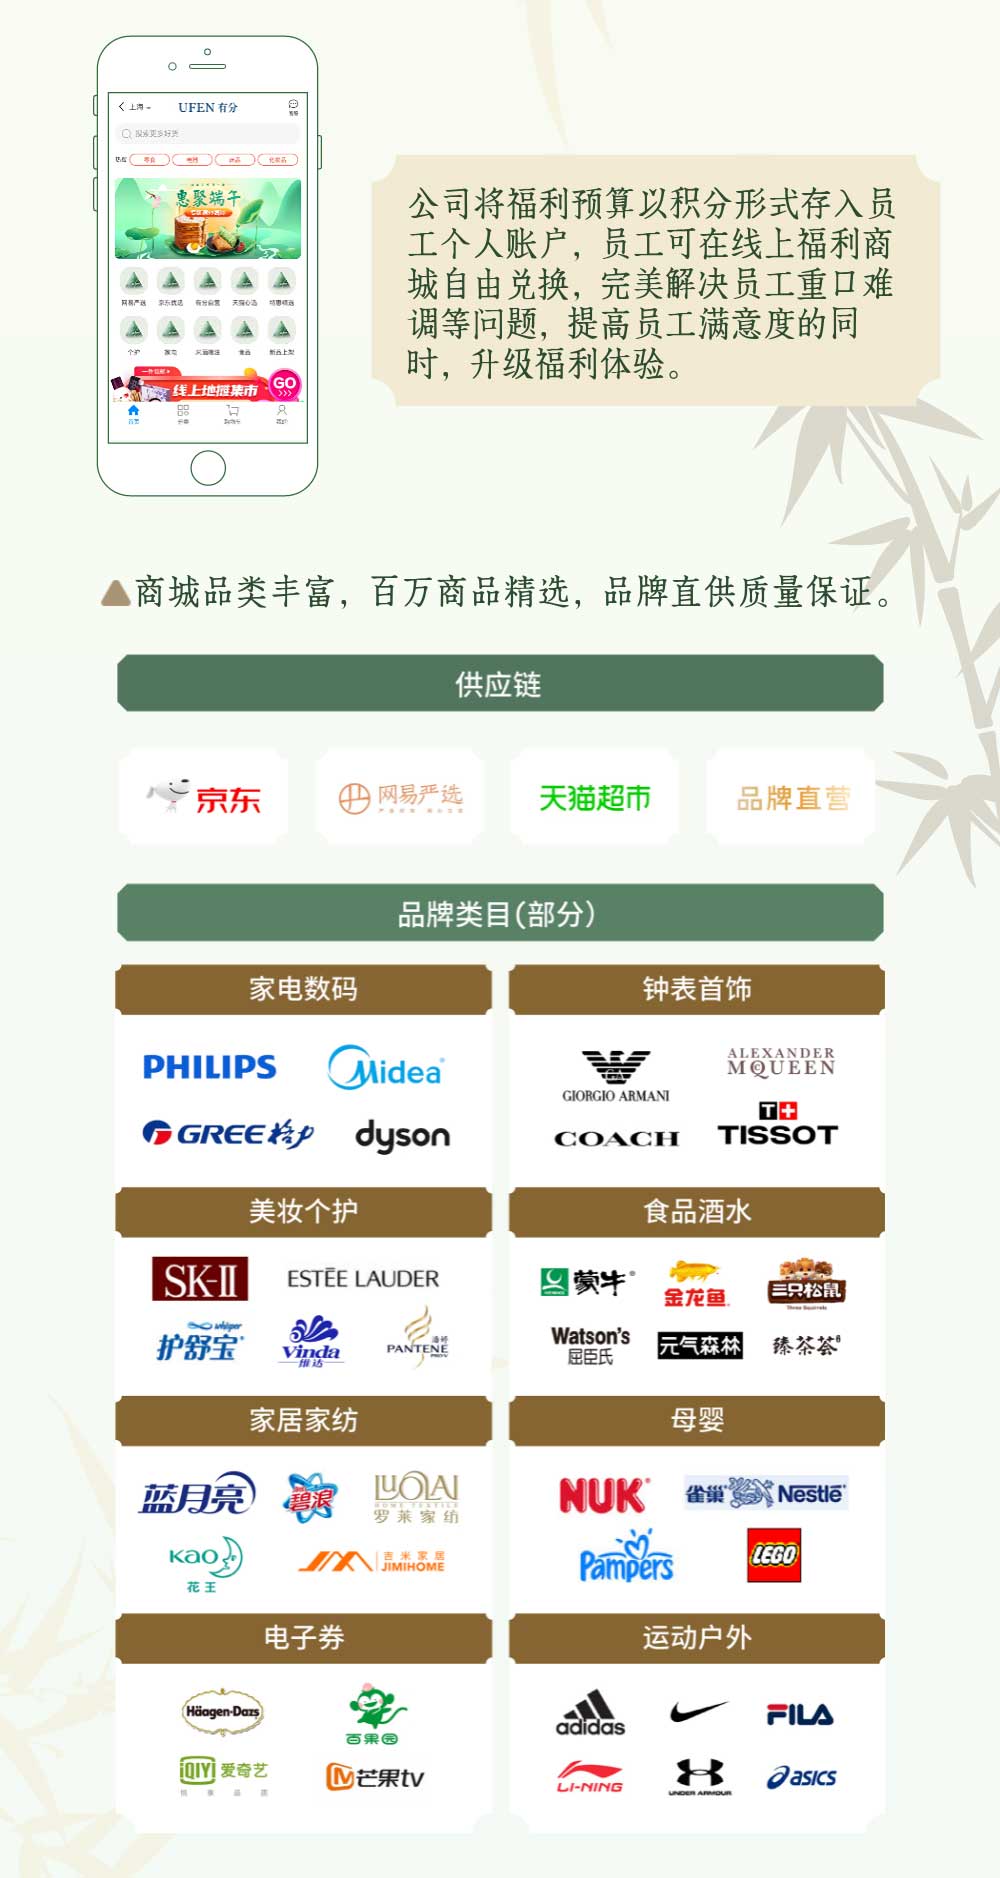 端午节产品营销推广粽子长图_05.jpg